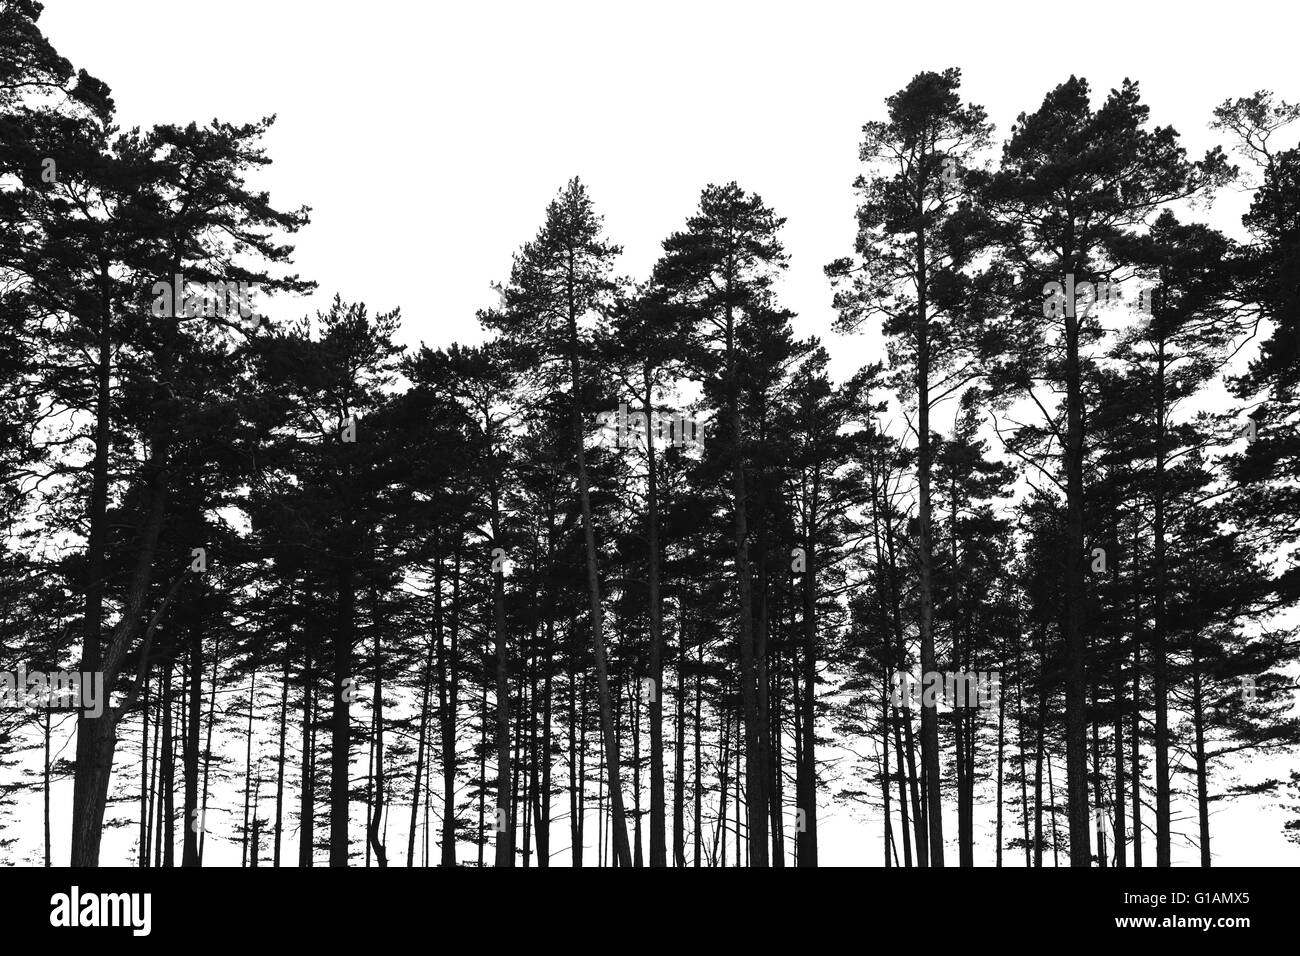 Forêt de pins isolé sur fond blanc. Photo silhouette stylisée noire Banque D'Images